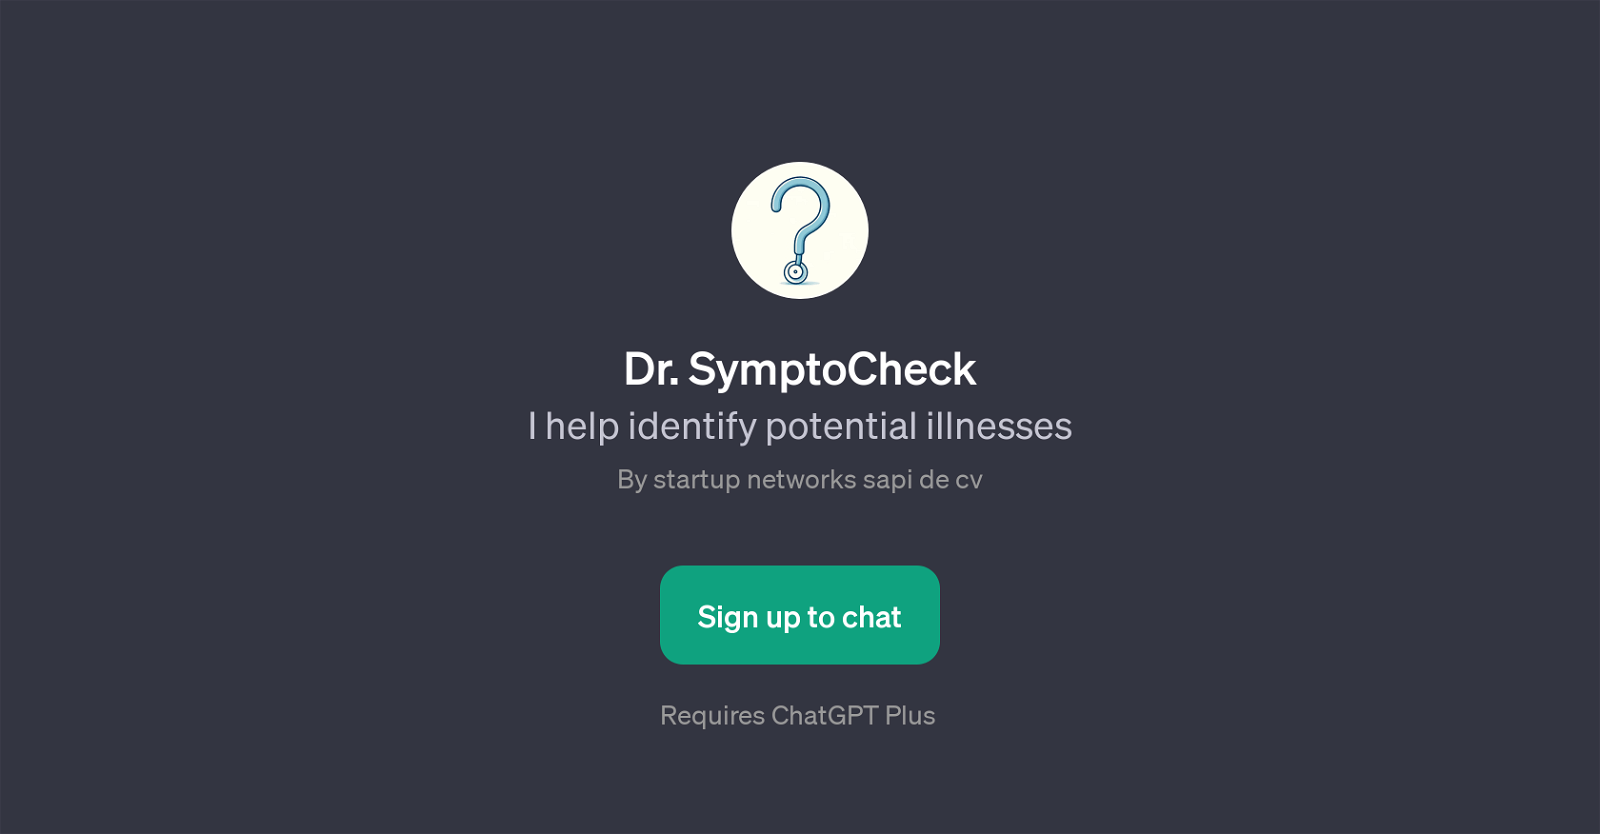 Dr. SymptoCheck website